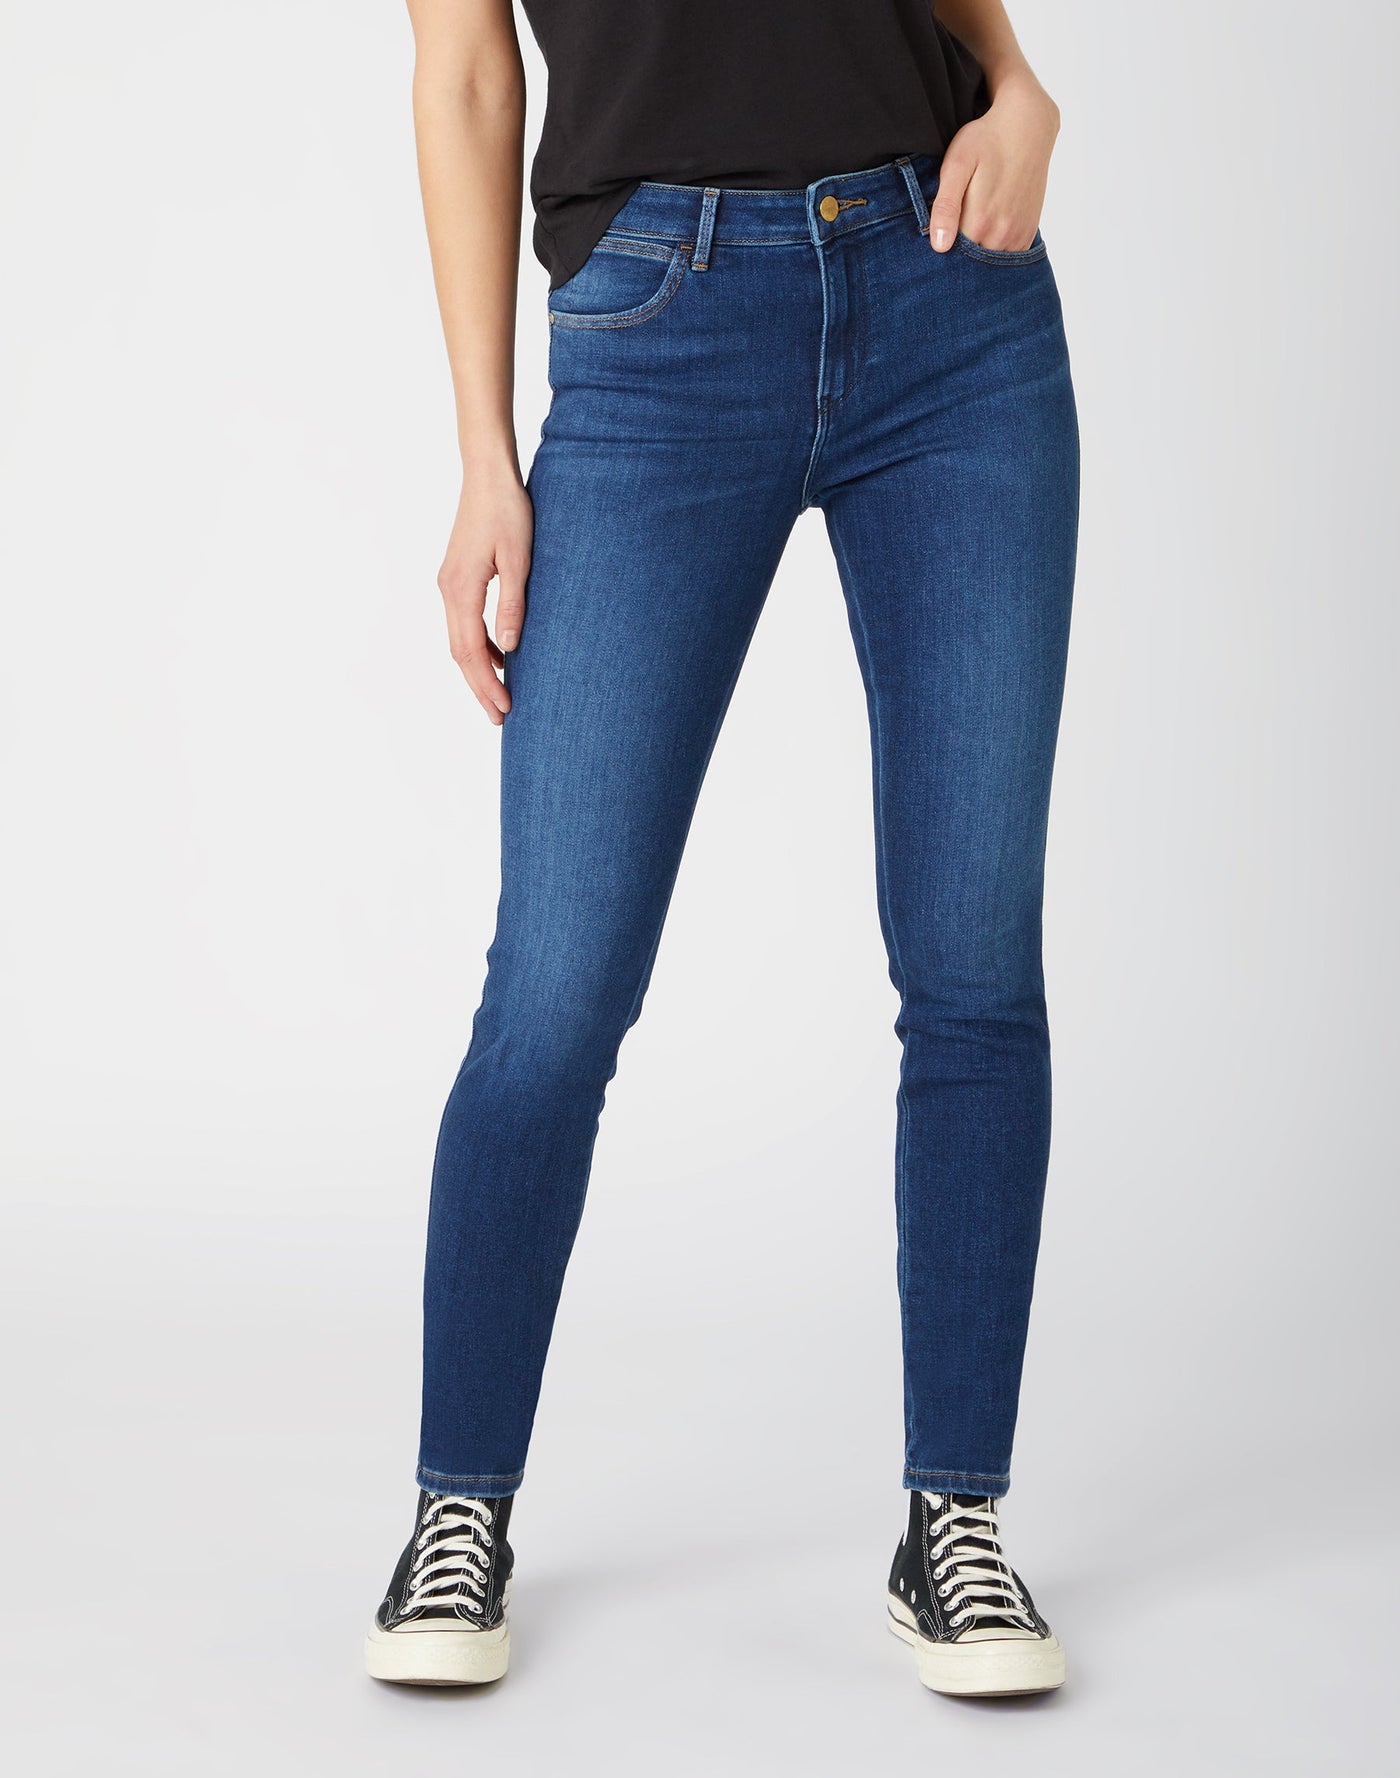 Skinny Jeans in Authentic Love Jeans Wrangler   